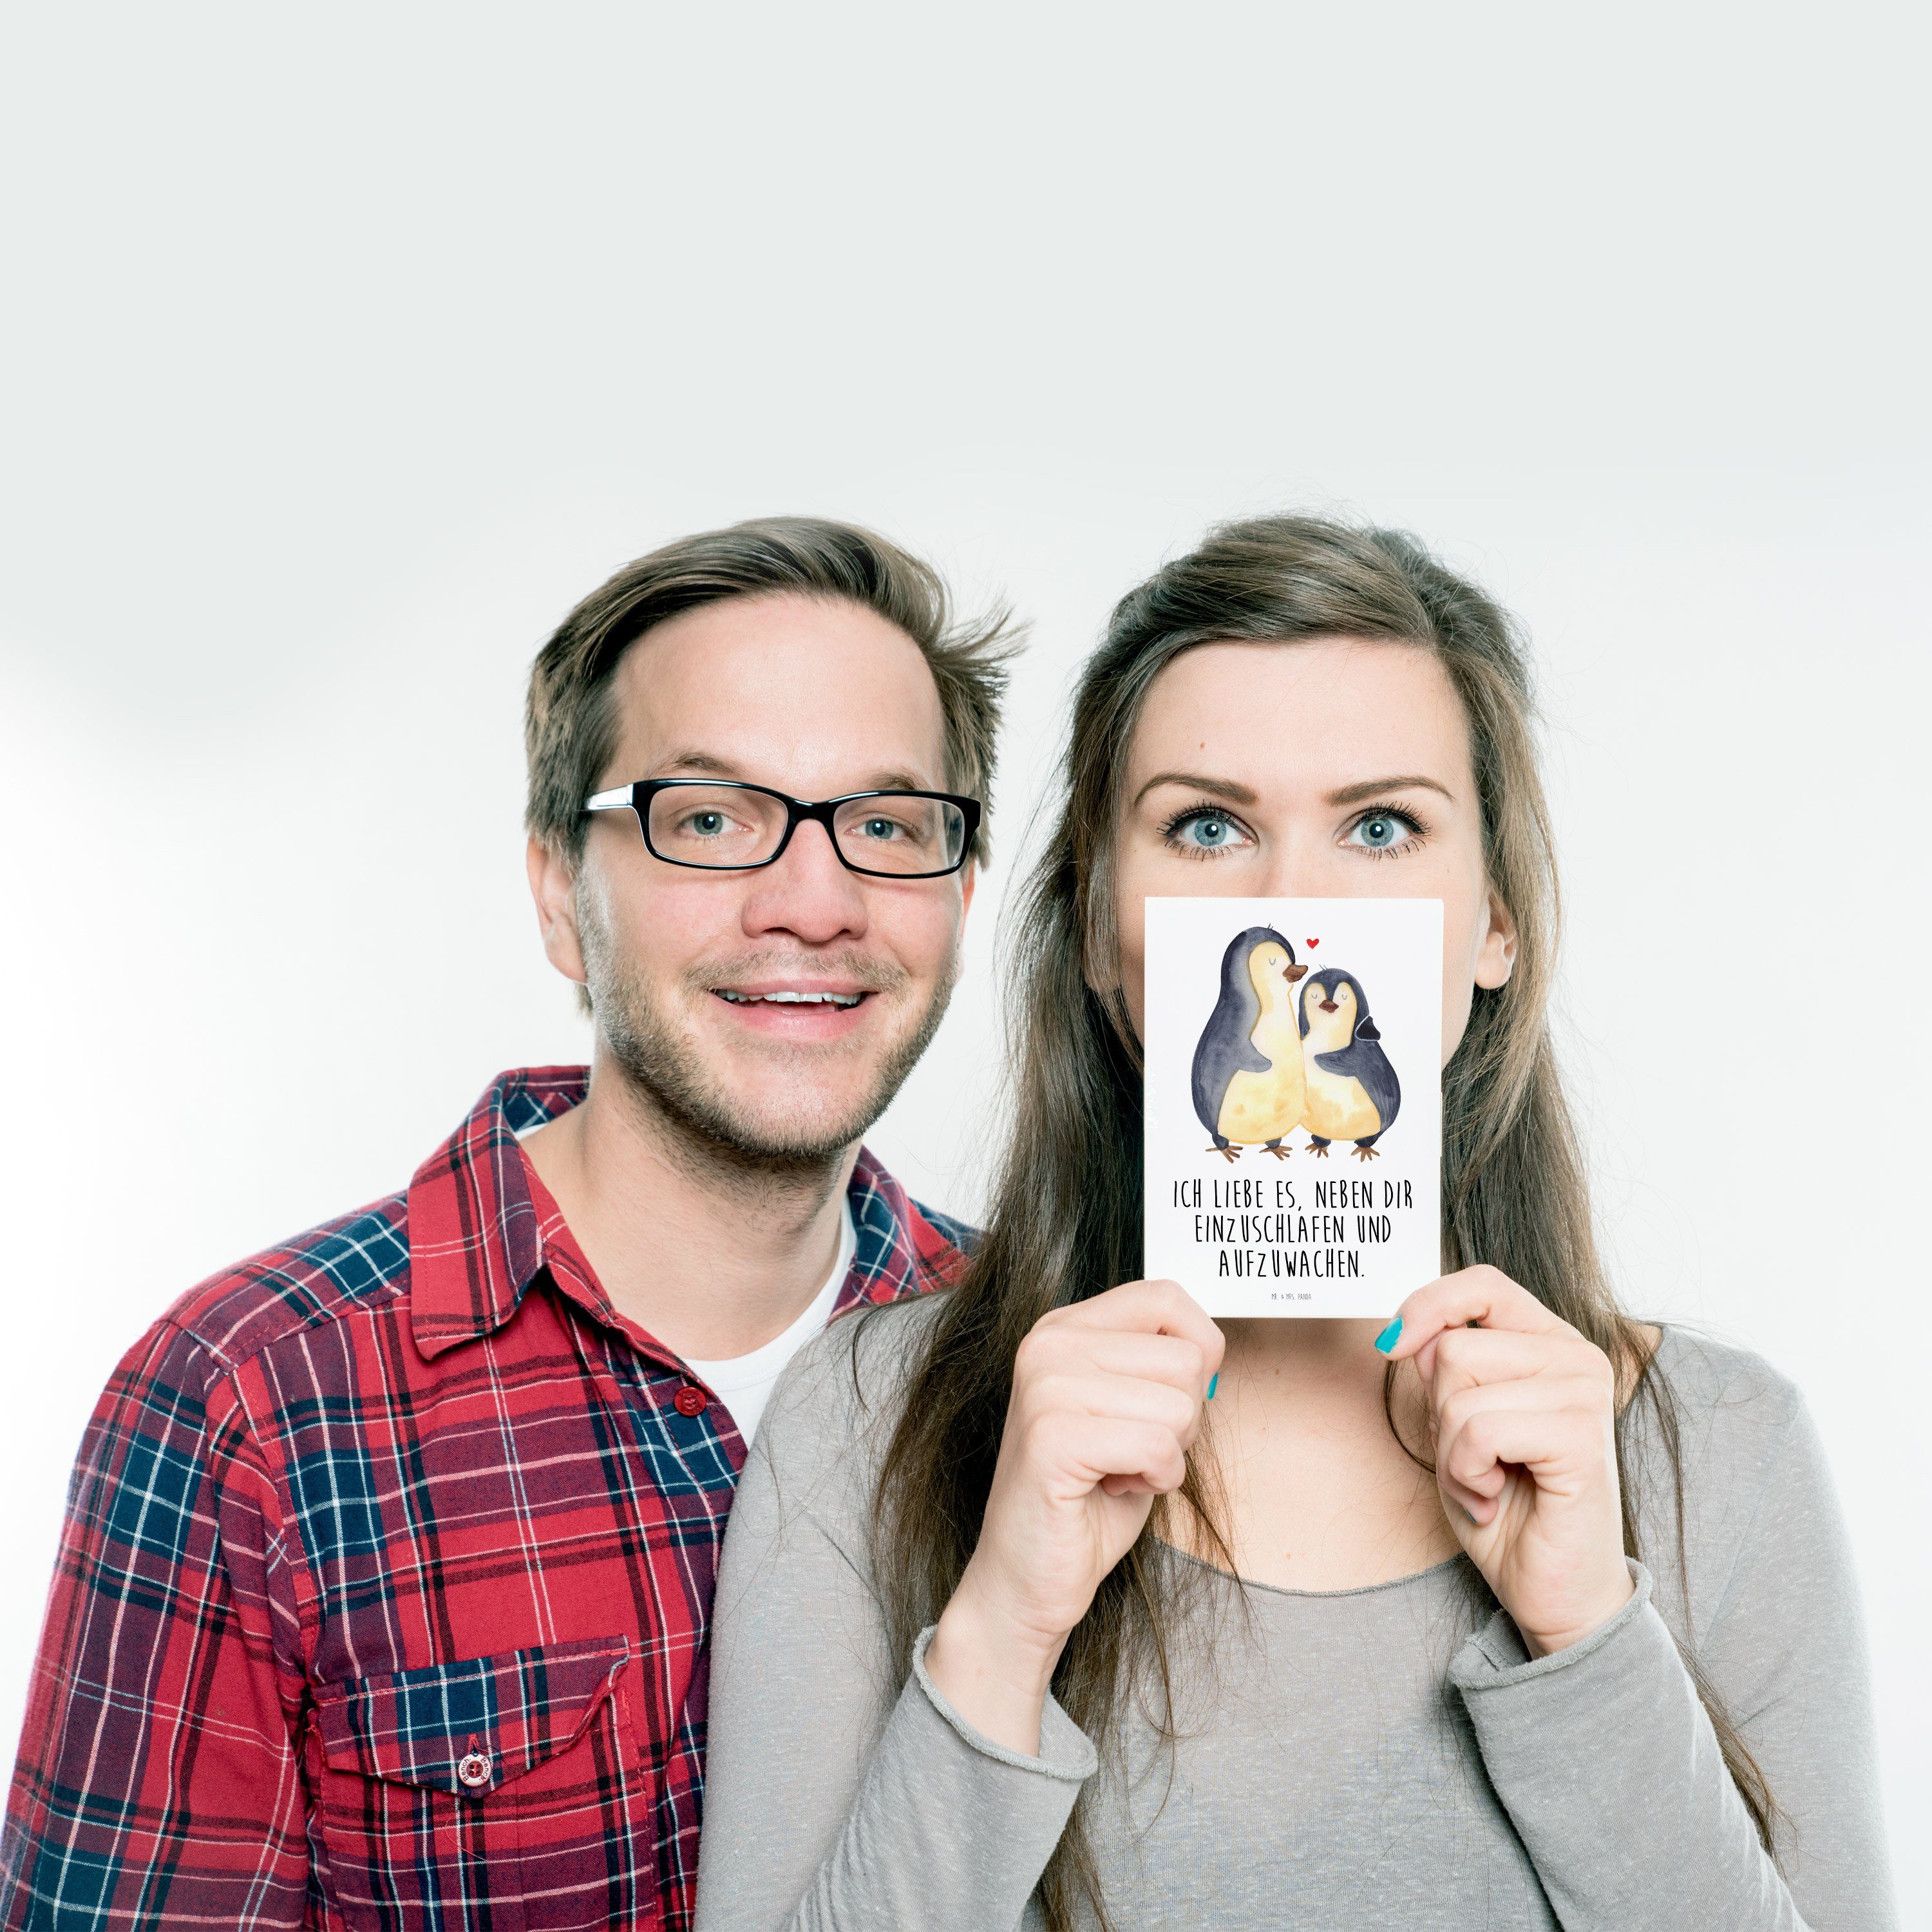 Weiß Geschenk, Panda Geschenk Freundin, Mrs. - Einschlafen Postkarte Ansich - & für Mr. Pinguine